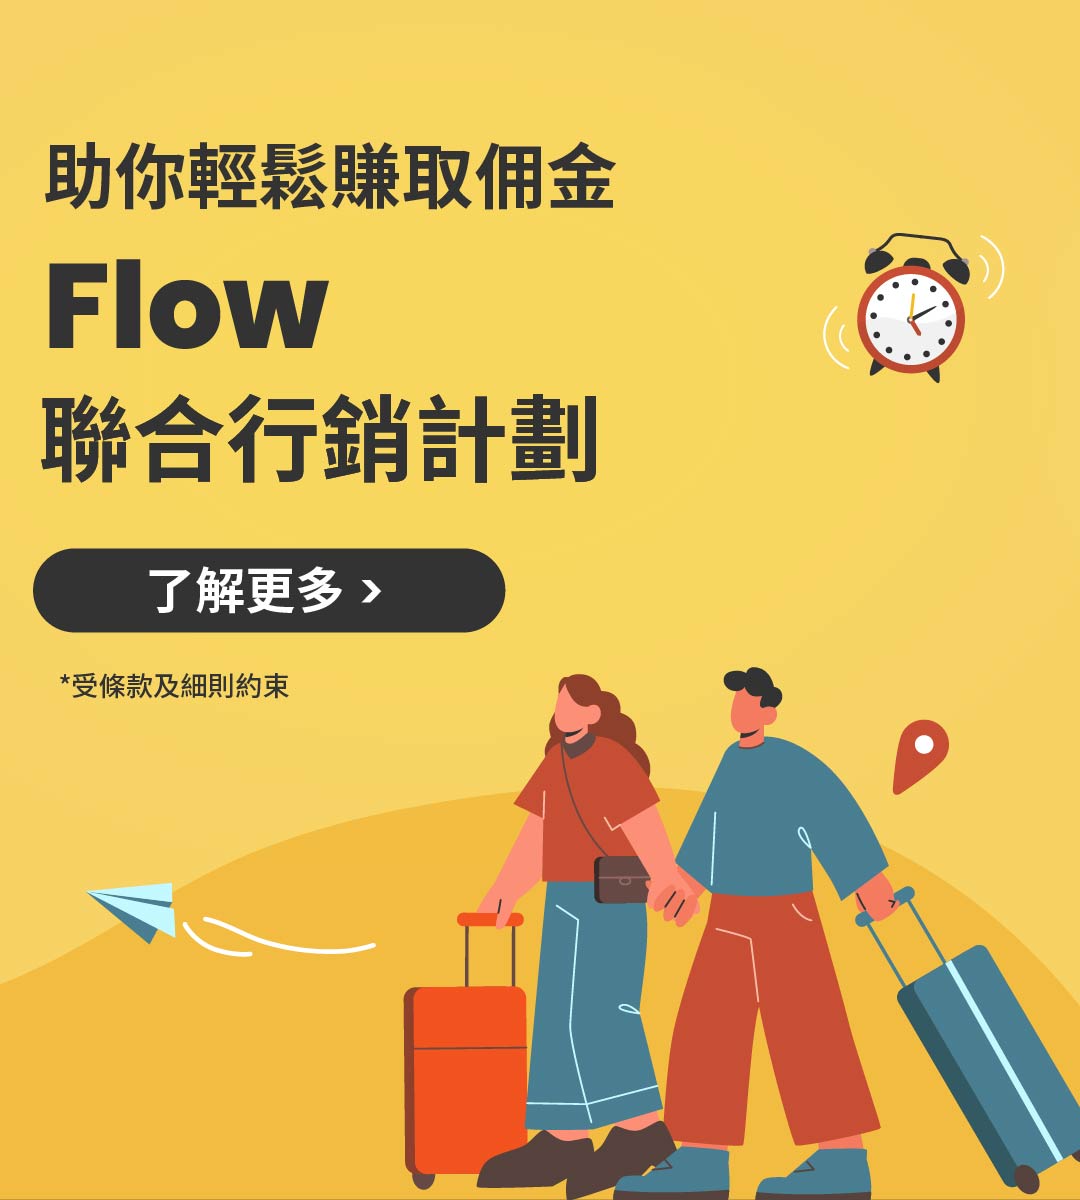 加入 Flow 聯合行銷計劃：輕鬆賺 5% 佣金